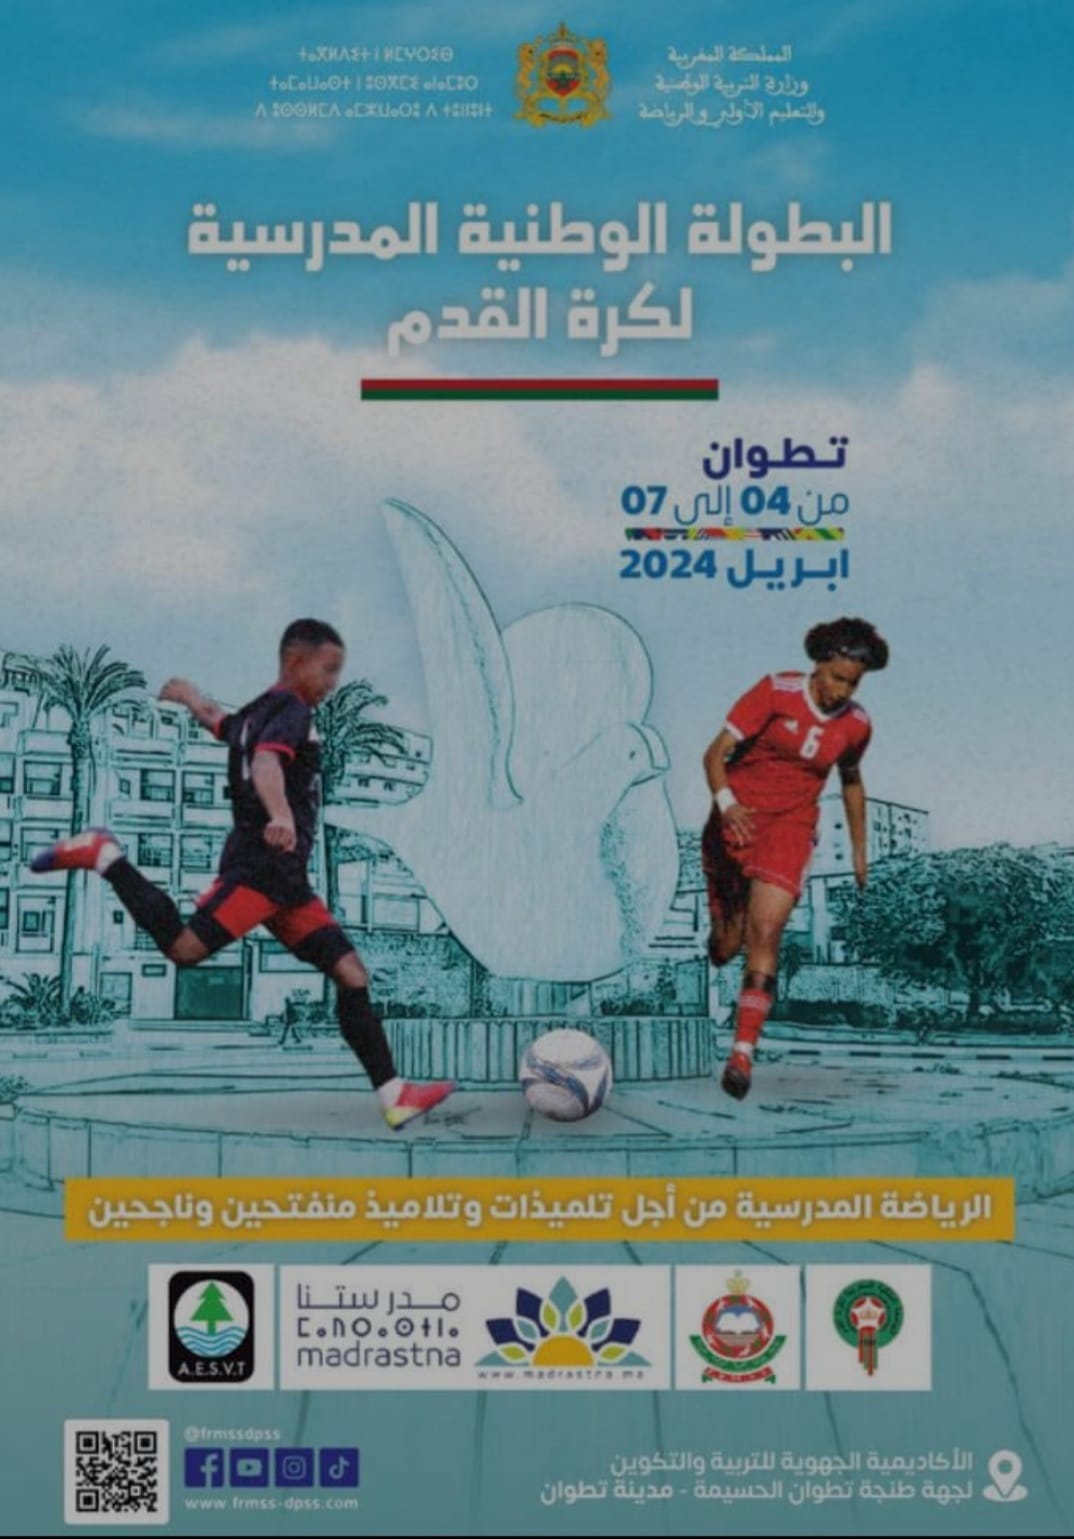 تطوان تستعد لاحتضان البطولة الوطنية المدرسية لكرة القدم. - AgadirToday